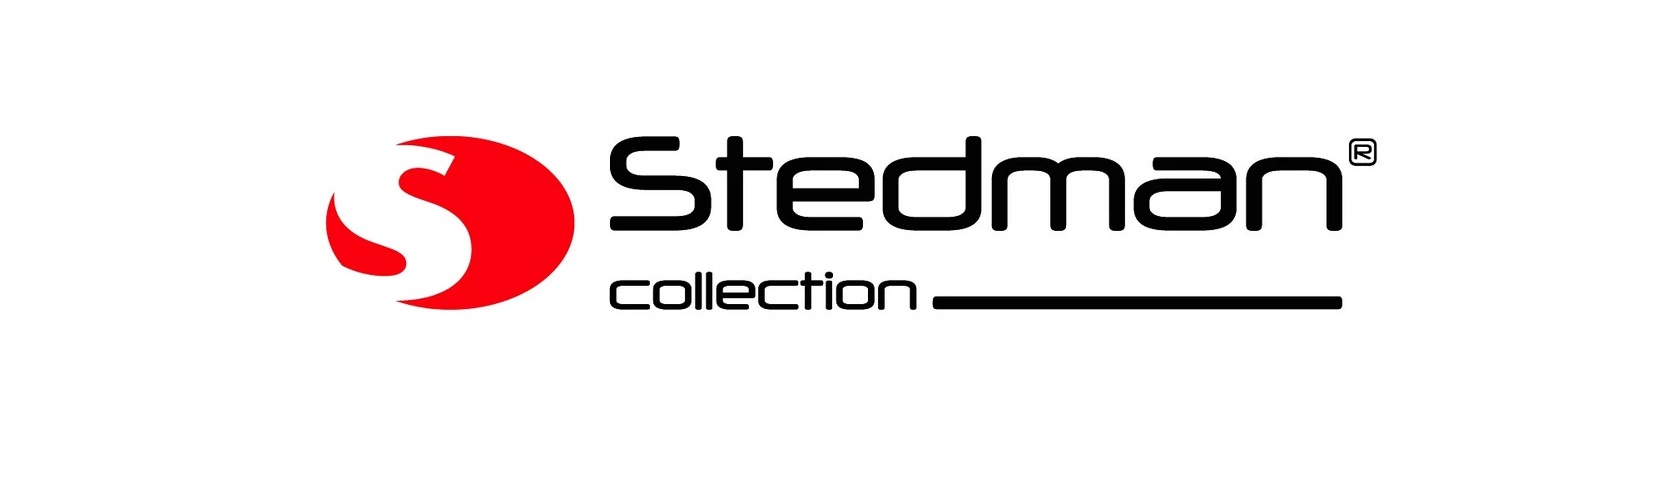 Stedman kolekcija